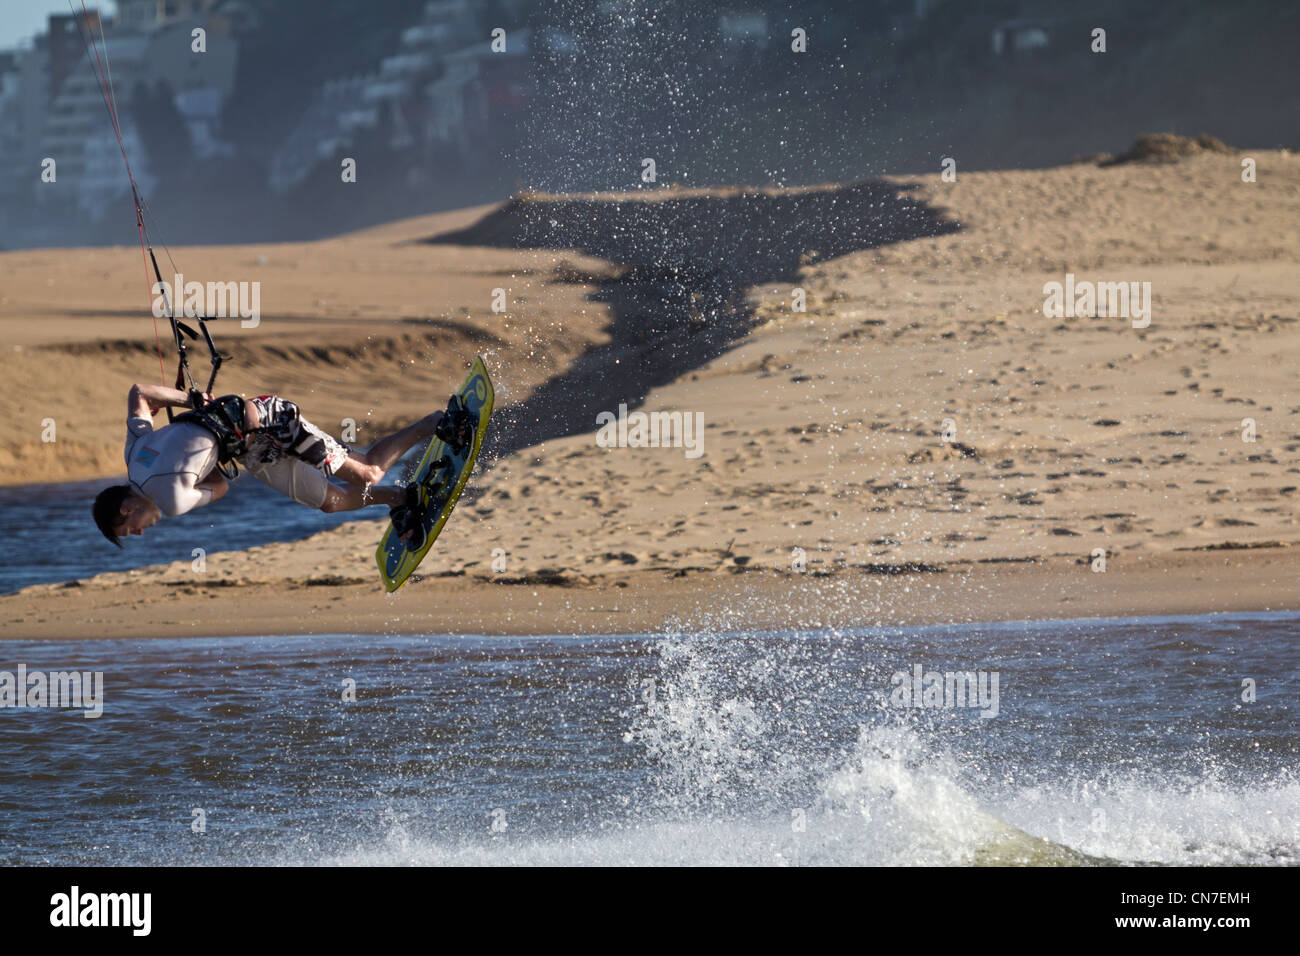 Il Kite-surfer in azione Foto Stock